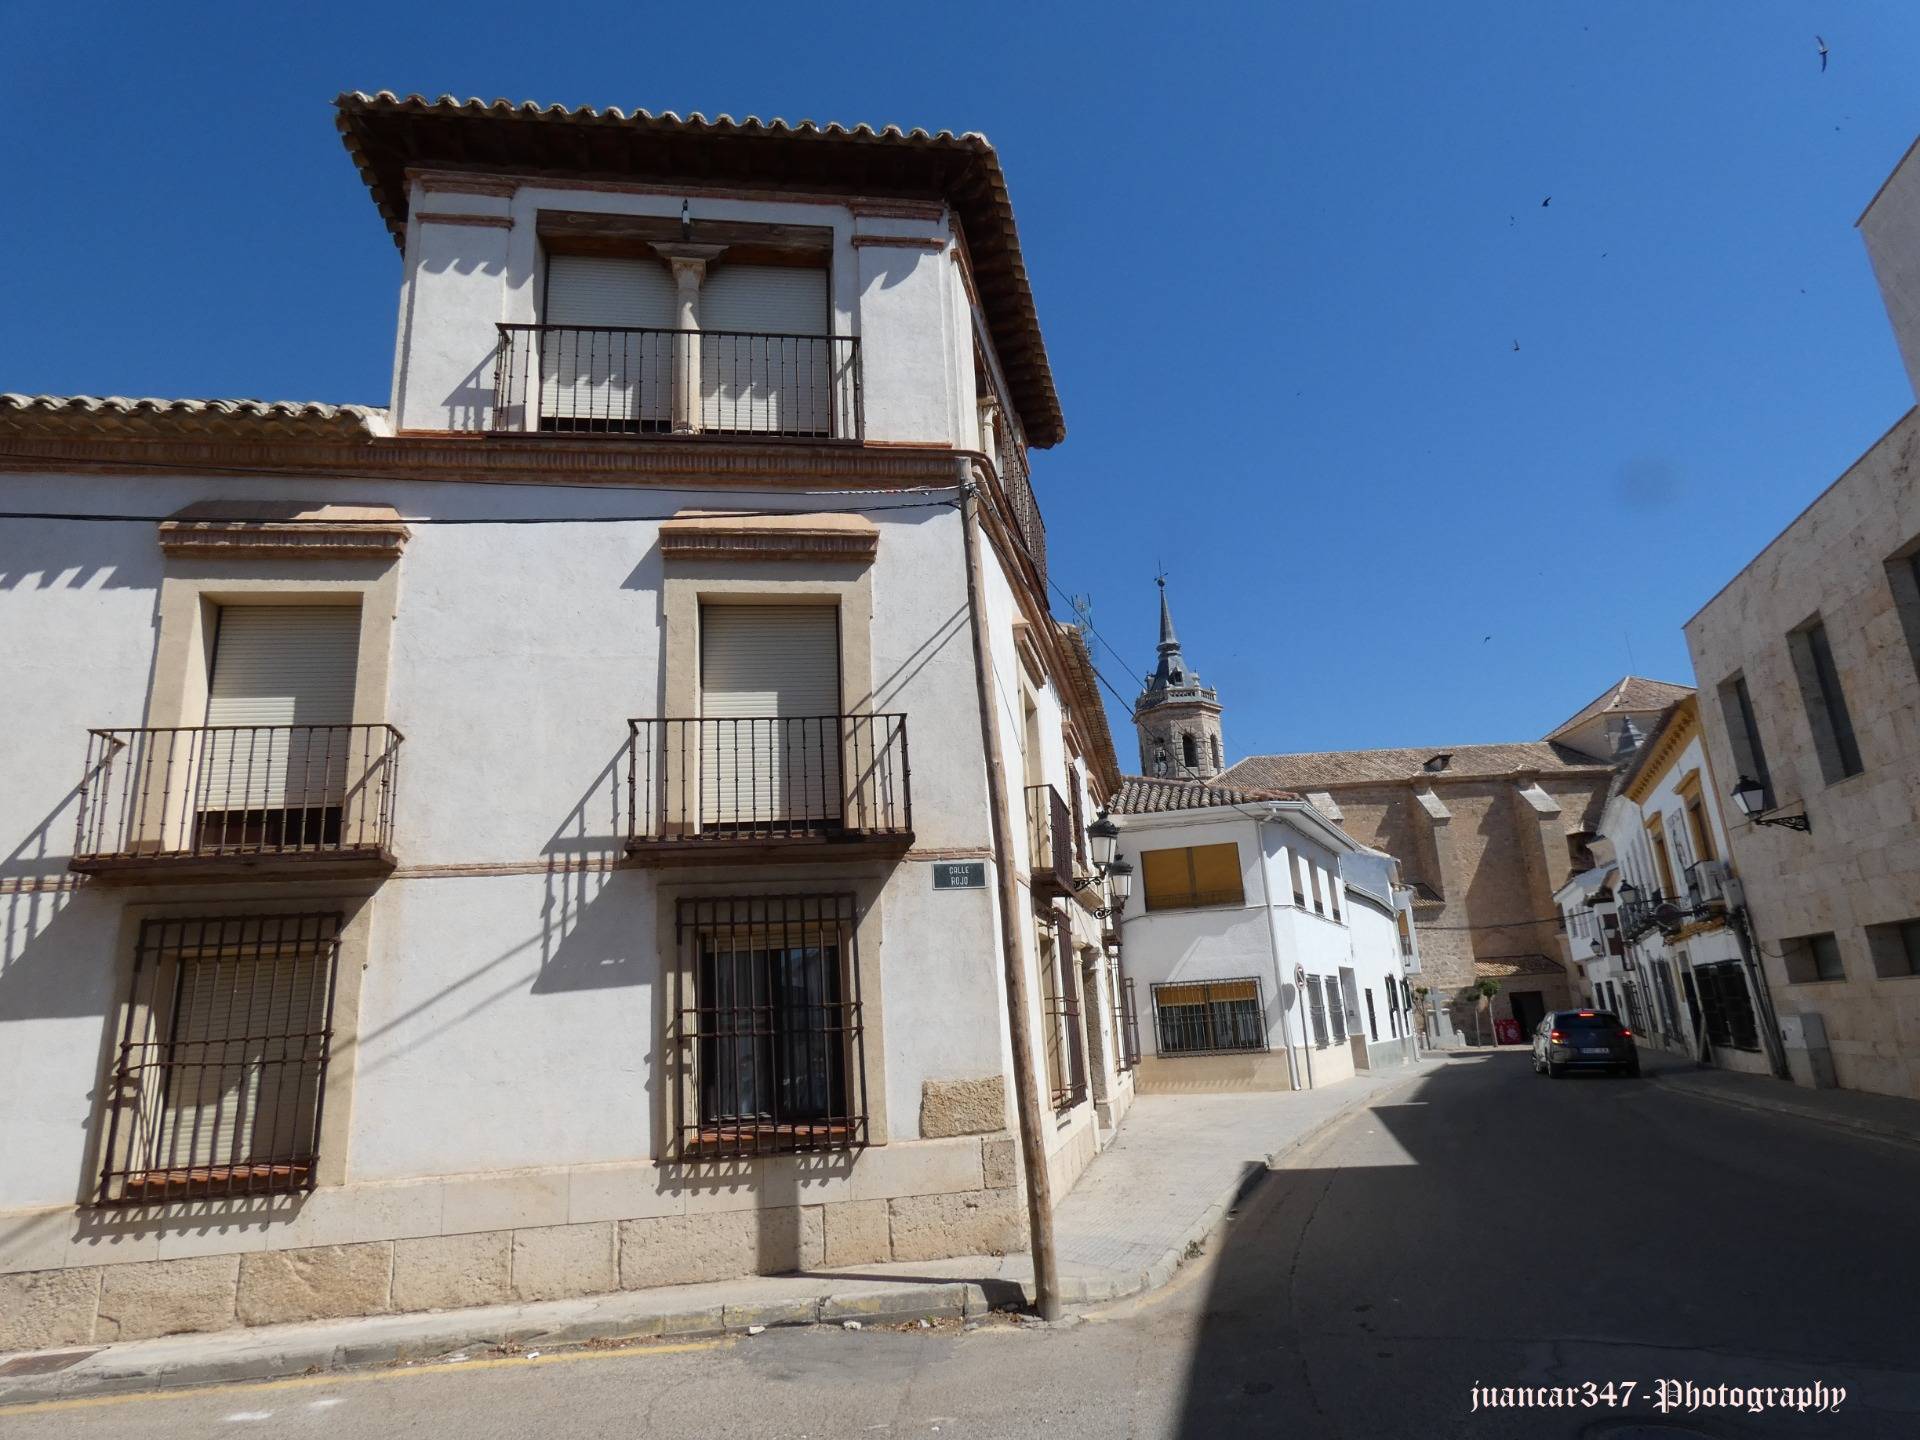 Traditional La Mancha architecture